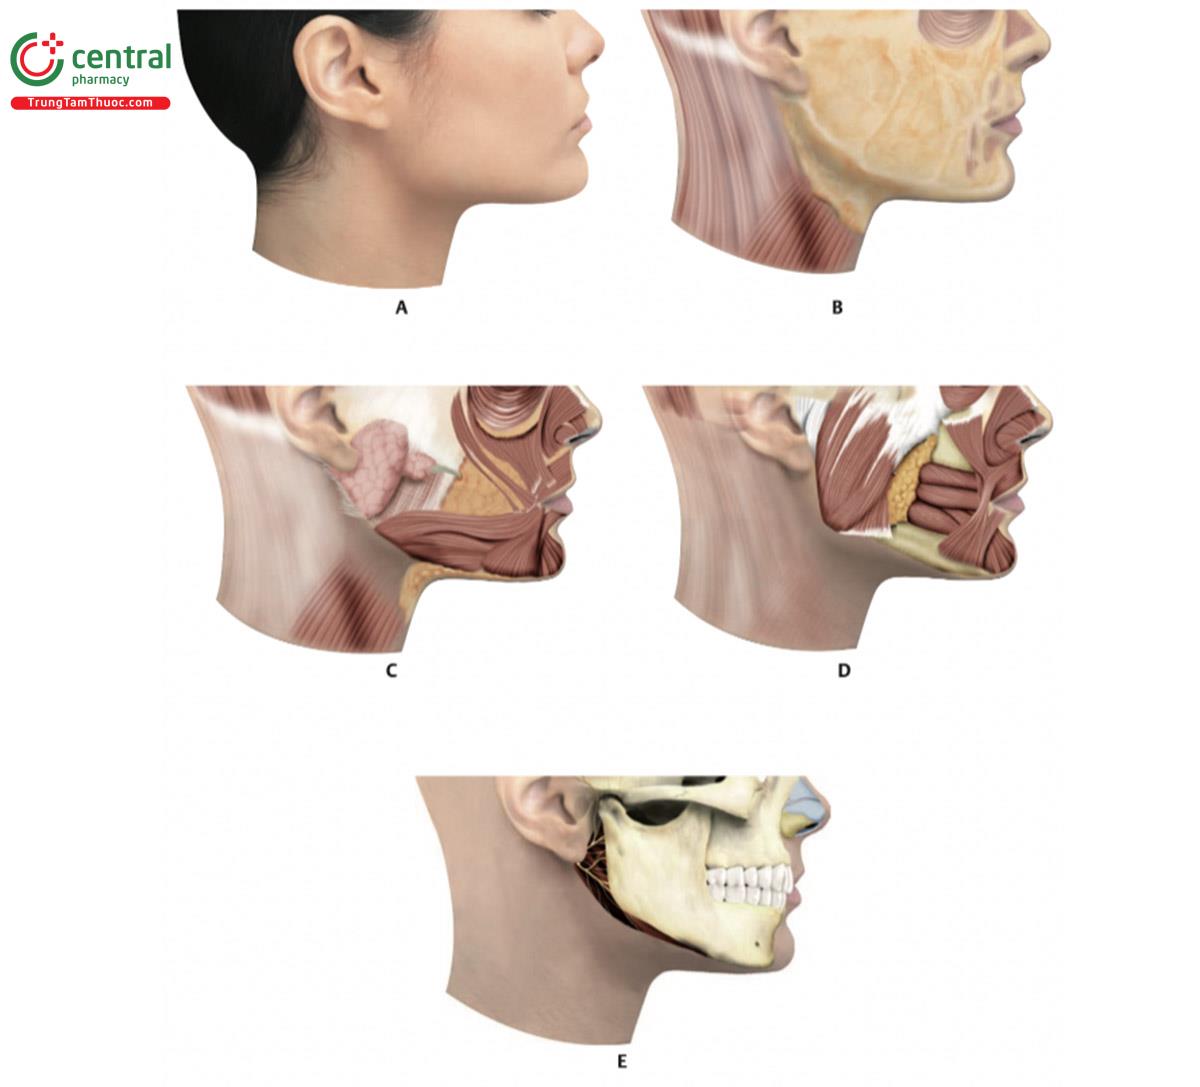 Hình 17.5 A. Nhìn từ bên phải của khuôn mặt. B. Sau khi loại bỏ da, cho thấy các lớp mỡ nông (SFP). C. Sau khi loại bỏ da và SFP. Chú ý tuyến mang tai với ống dẫn tương ứng và các cơ sau: cơ gò má lớn và bé, cơ cười, cơ vòng miệng (OOM), cơ hạ góc miệng (DMAM), cơ hạ môi, cơ cằm, cơ platysma và cơ cắn. D. Cùng hình ảnh trong đó có thể nhìn thấy các cơ sau: OOM, DMAM, cơ hạ môi, cơ cằm, cơ mút và cơ cắn.  E. Cấu trúc xương hàm trên và hàm dưới.